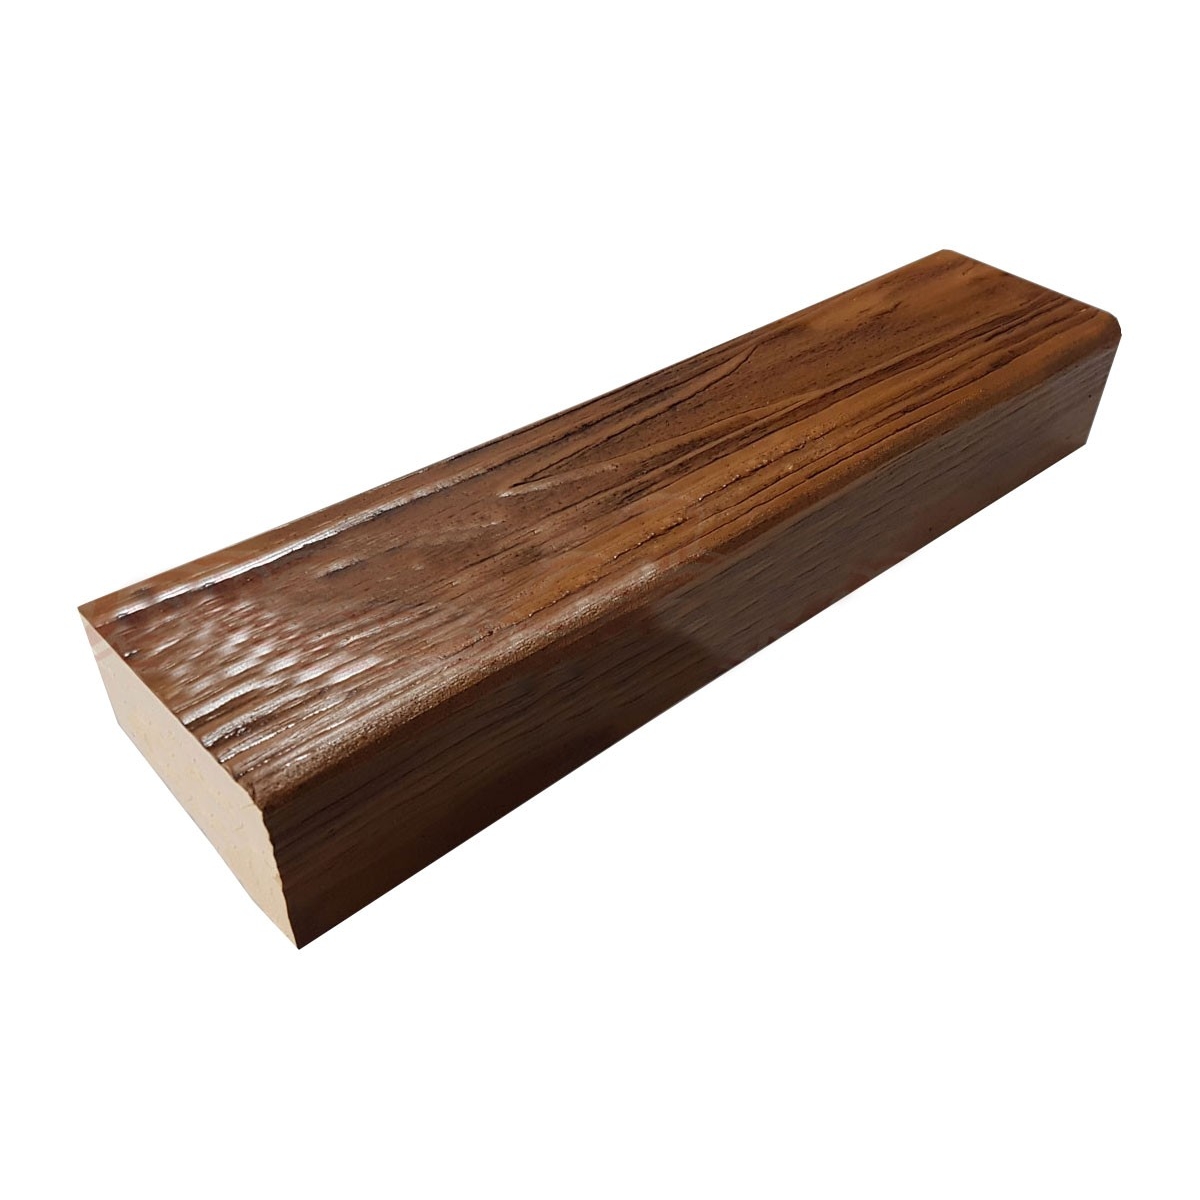 Viga imitación a madera fabricada en poliestireno extruido de 11X5x260